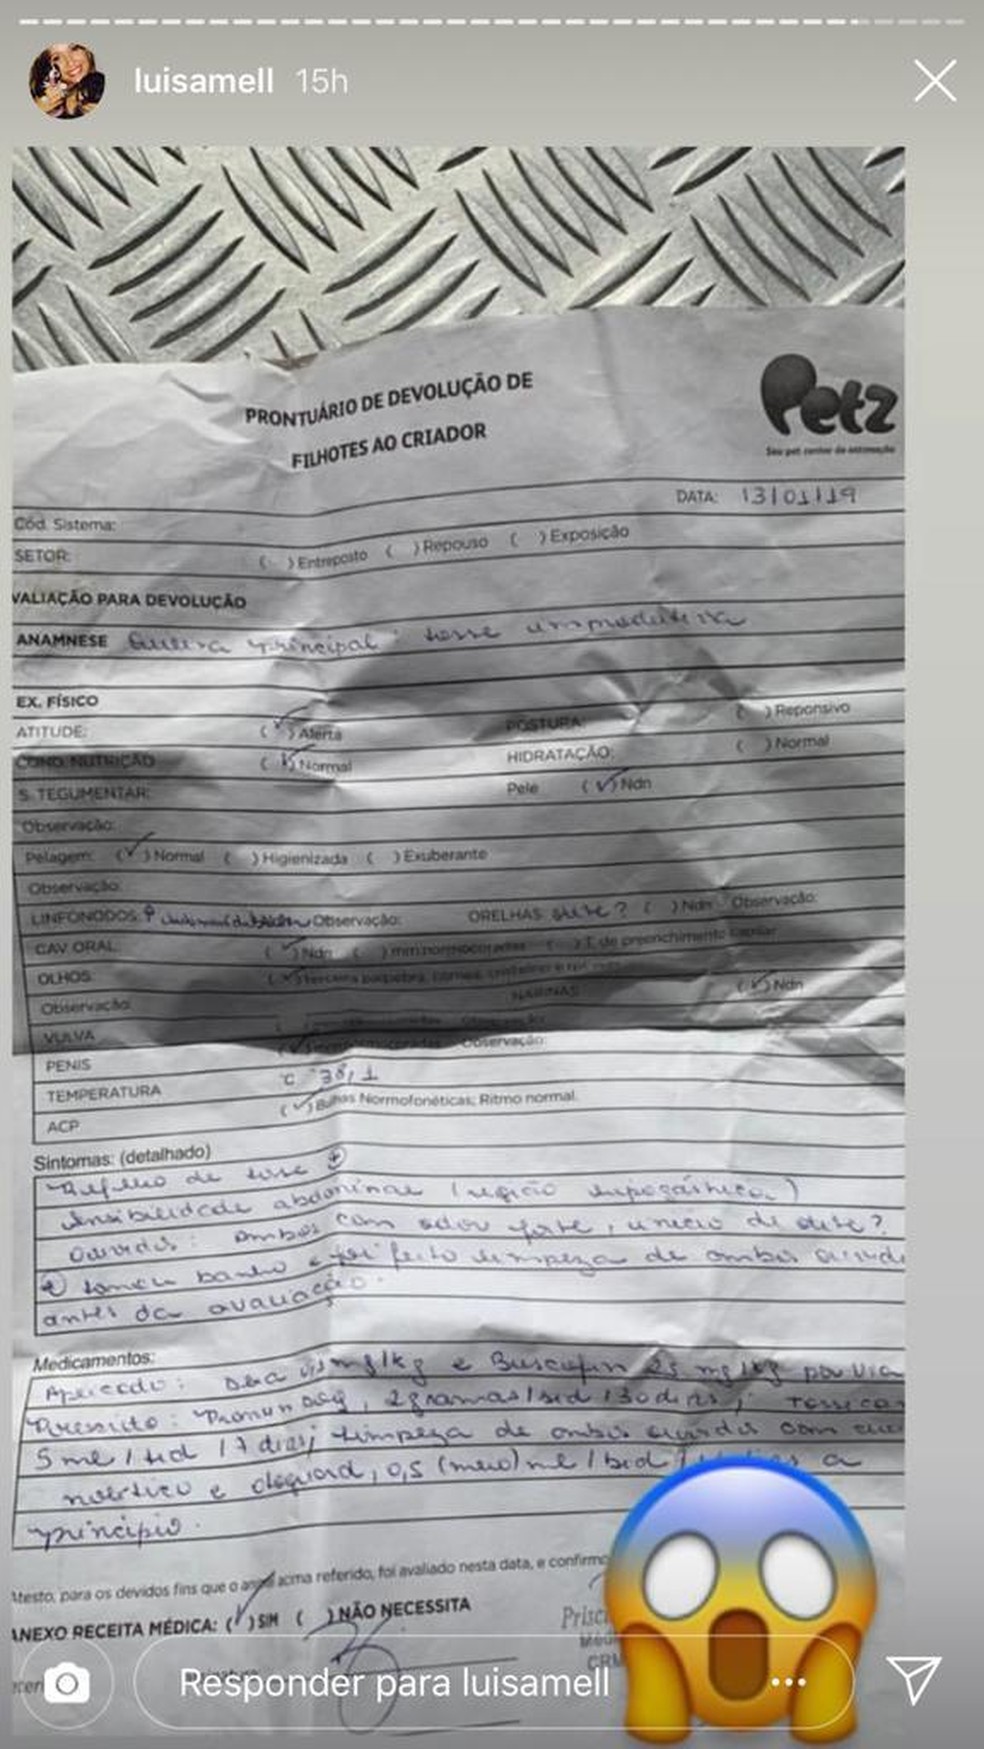 Luísa Mel divulgou documento que comprava relacionamento da Petz com o canil fechado por denúncia de maus-tratos em Piedade — Foto: Reprodução/Instagram